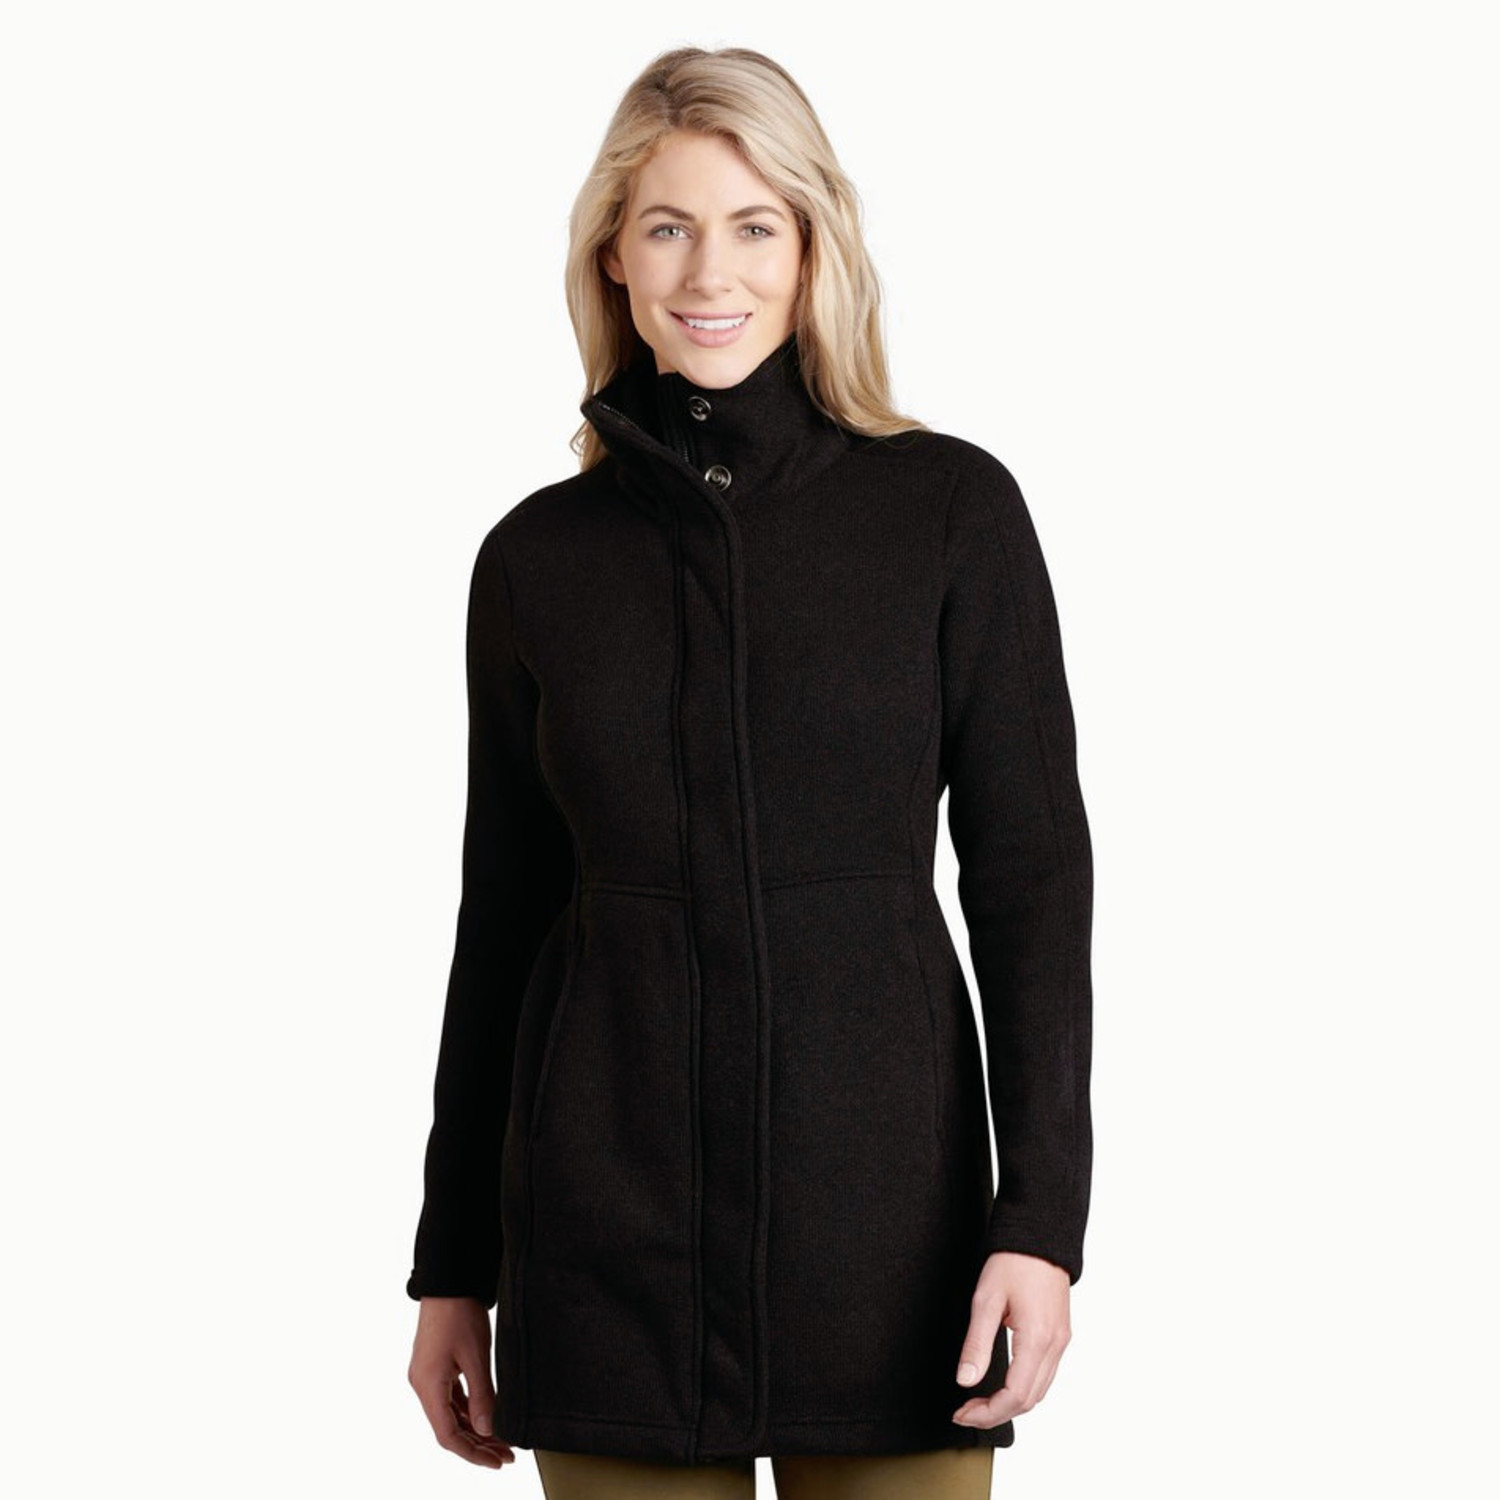 https://cdn.shoplightspeed.com/shops/634249/files/40294992/1500x4000x3/kuhl-womens-highland-long-fleece-jacket.jpg